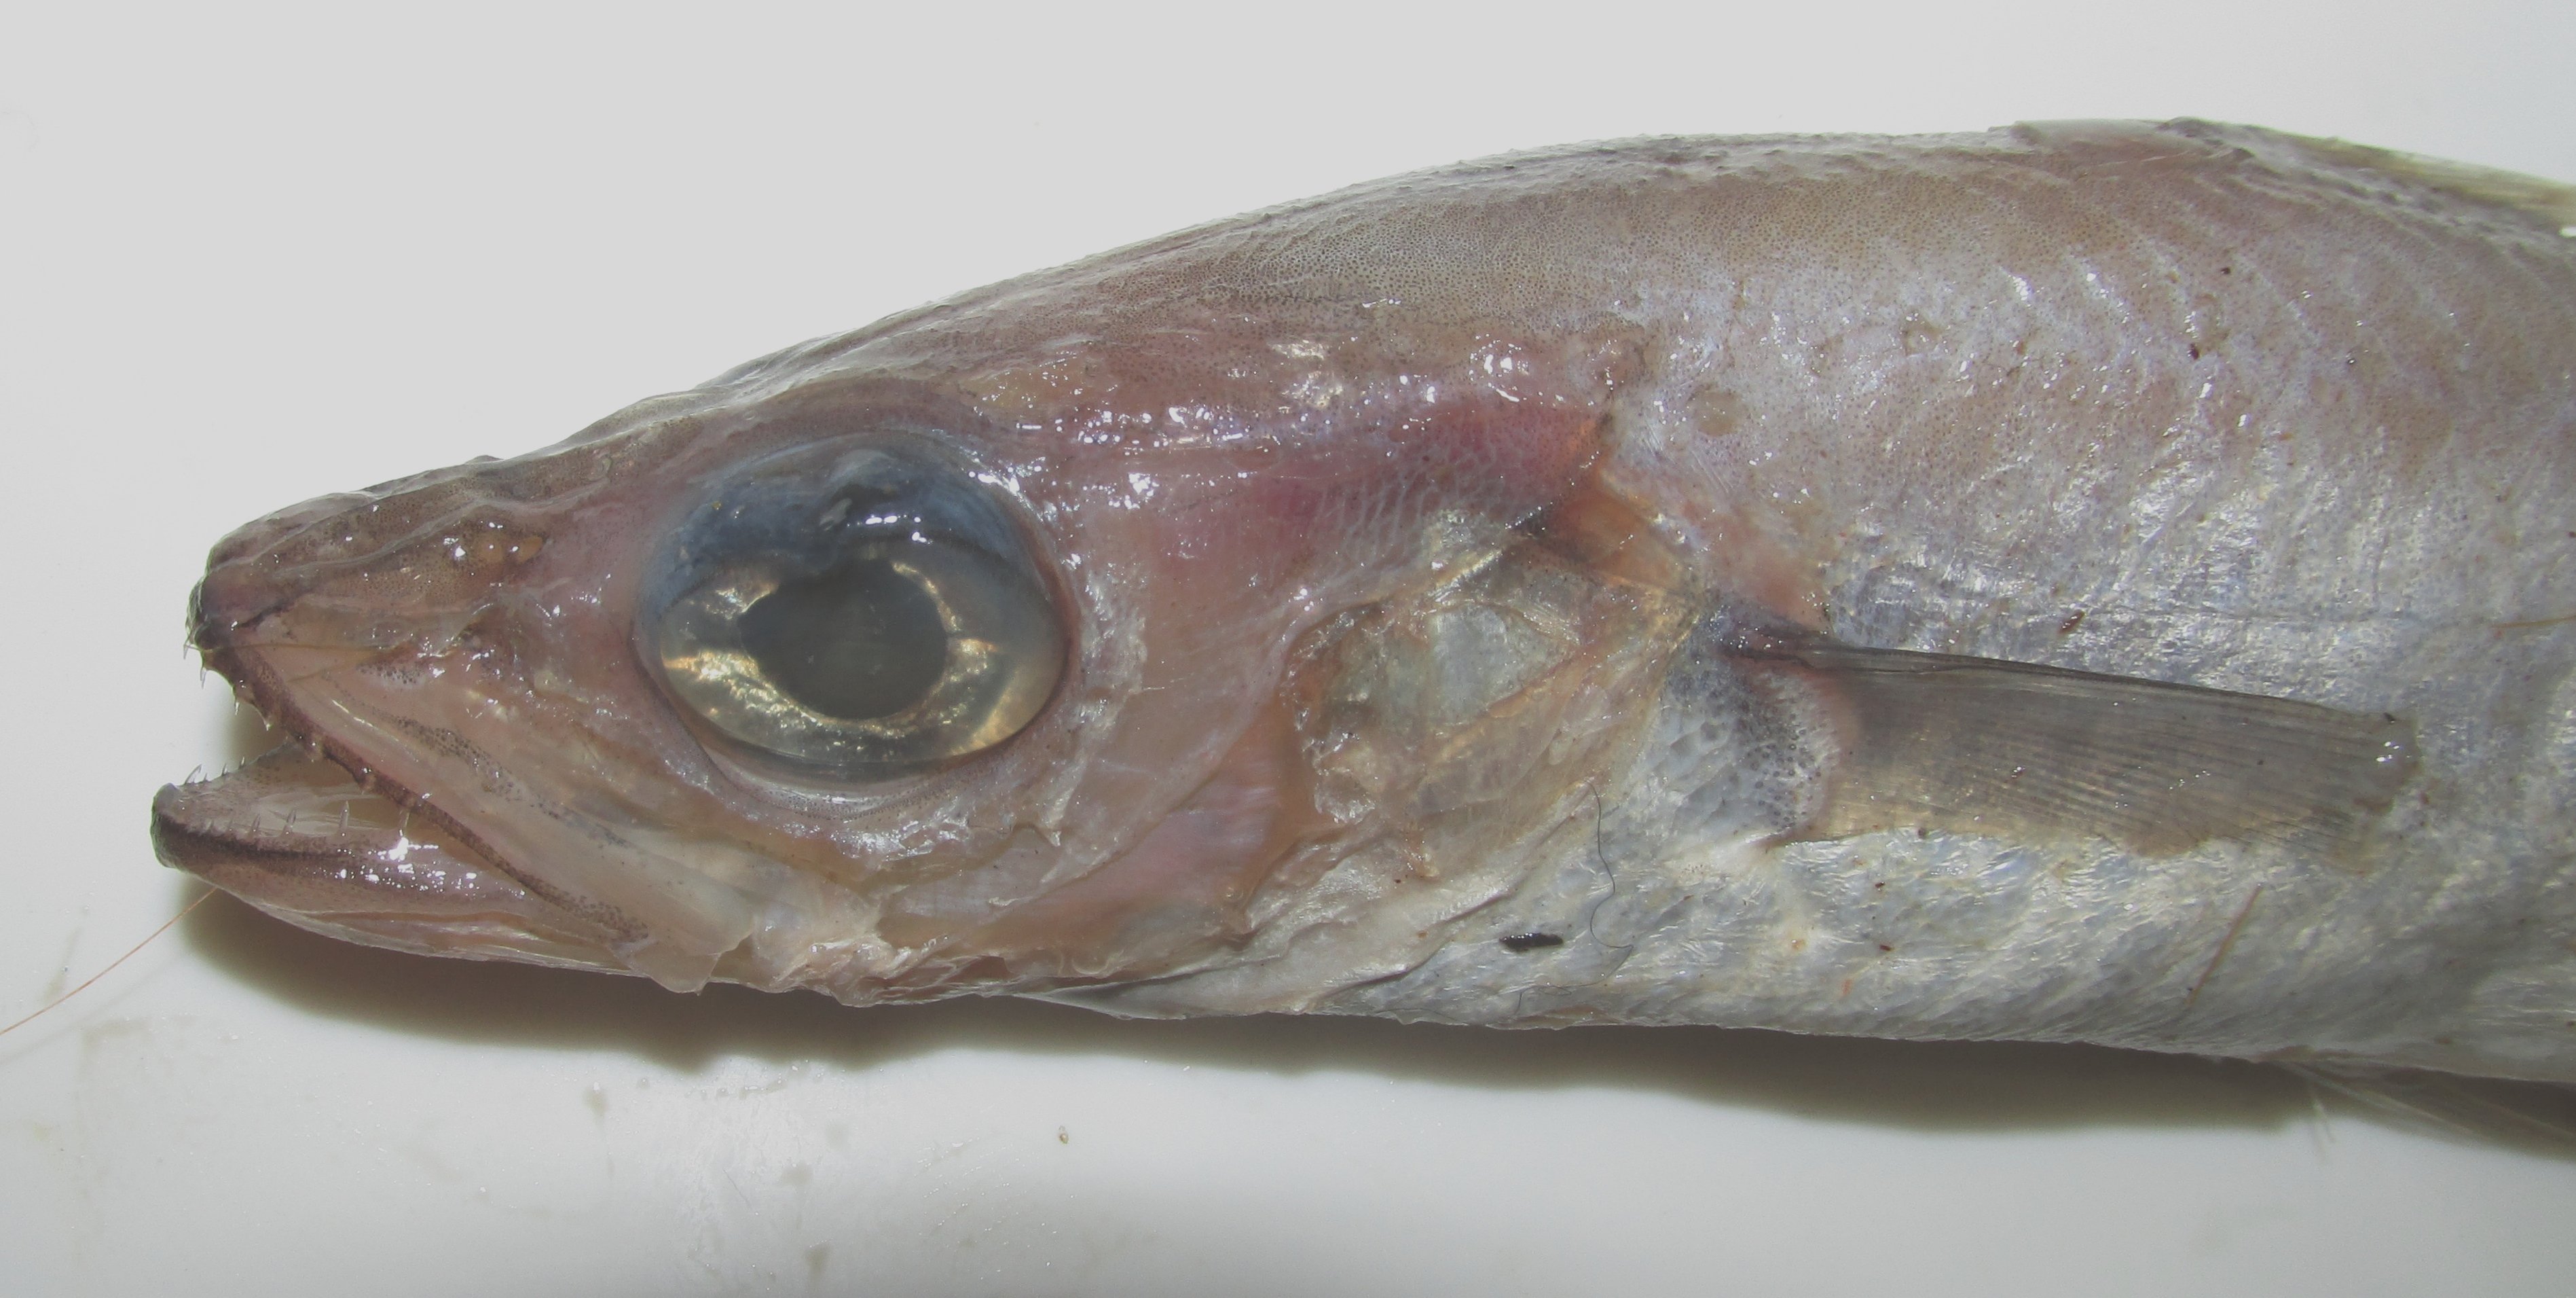 Путассу фото рыбы с головой живой